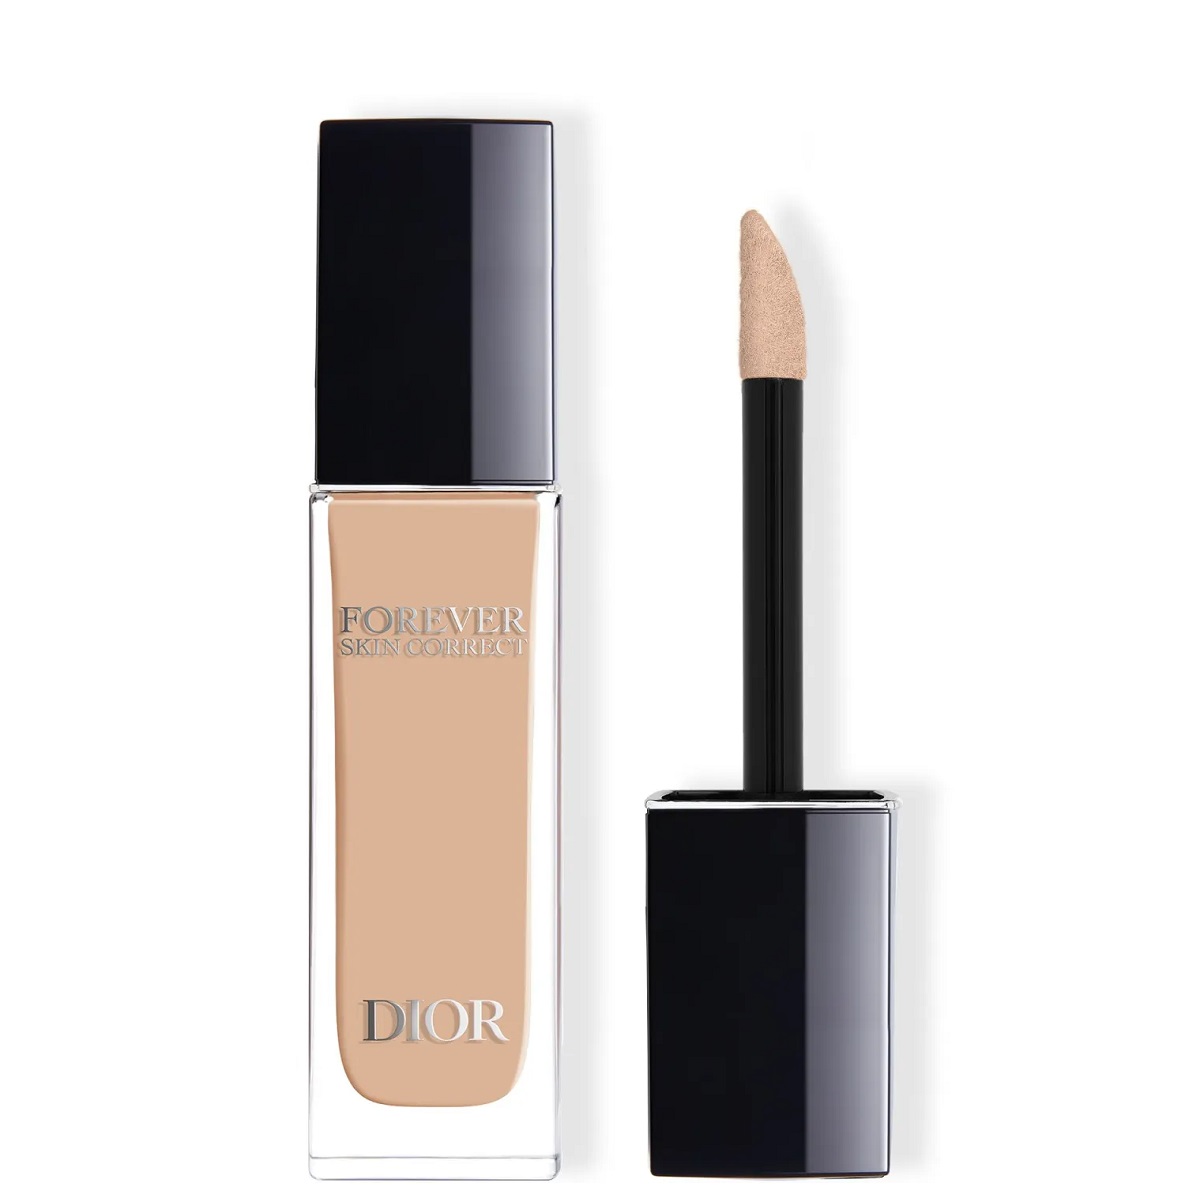 Dior Tekutý korektor Forever Skin Correct (Full-Coverage Concealer) 11 ml 00 Neutral